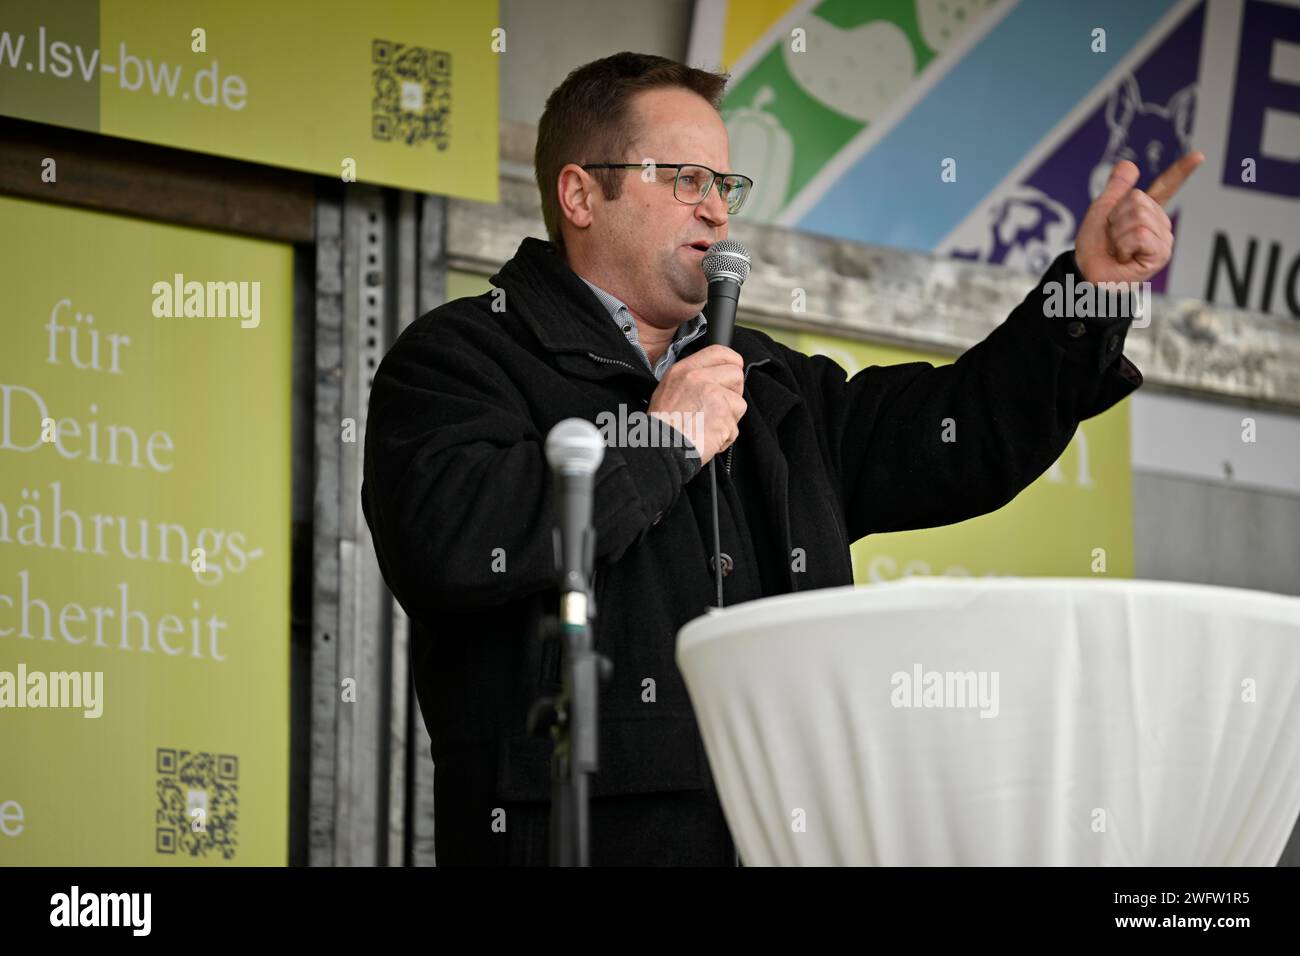 Kundgebung mit Jürgen Maurer, Vorsitzender des Bauernverbandes Schwaebisch Hall-Hohenlohe-Rems LBV, Mikrofon, Geste, Bauernprotest Stockfoto